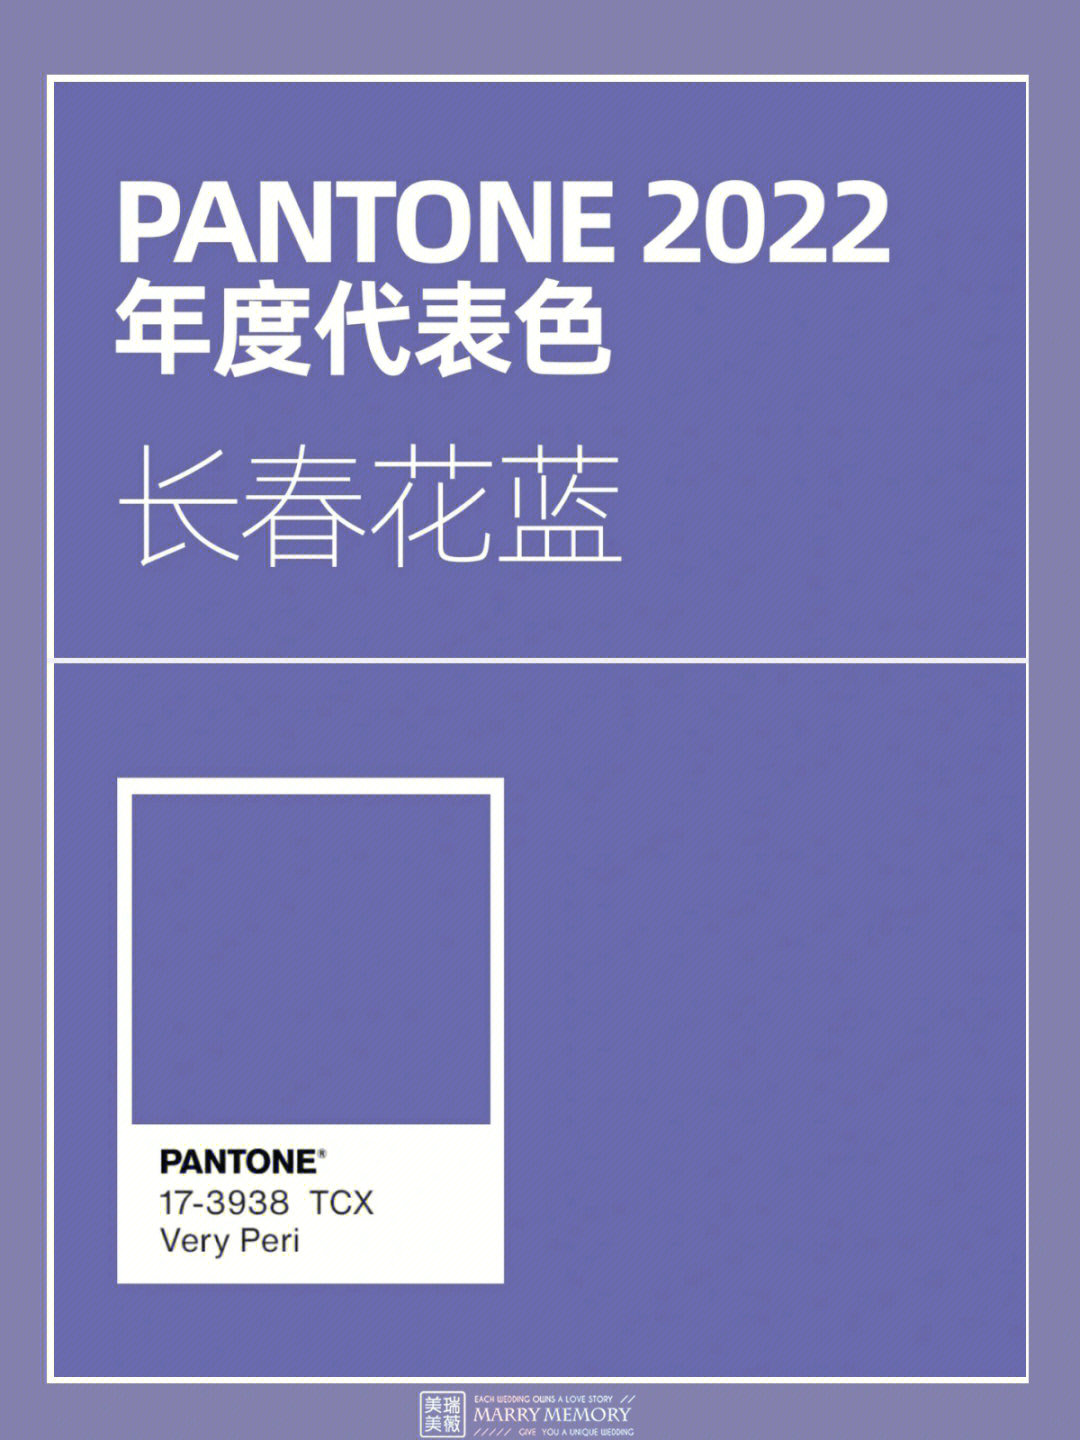 潘通2022年度流行色长春花蓝魅惑的蓝